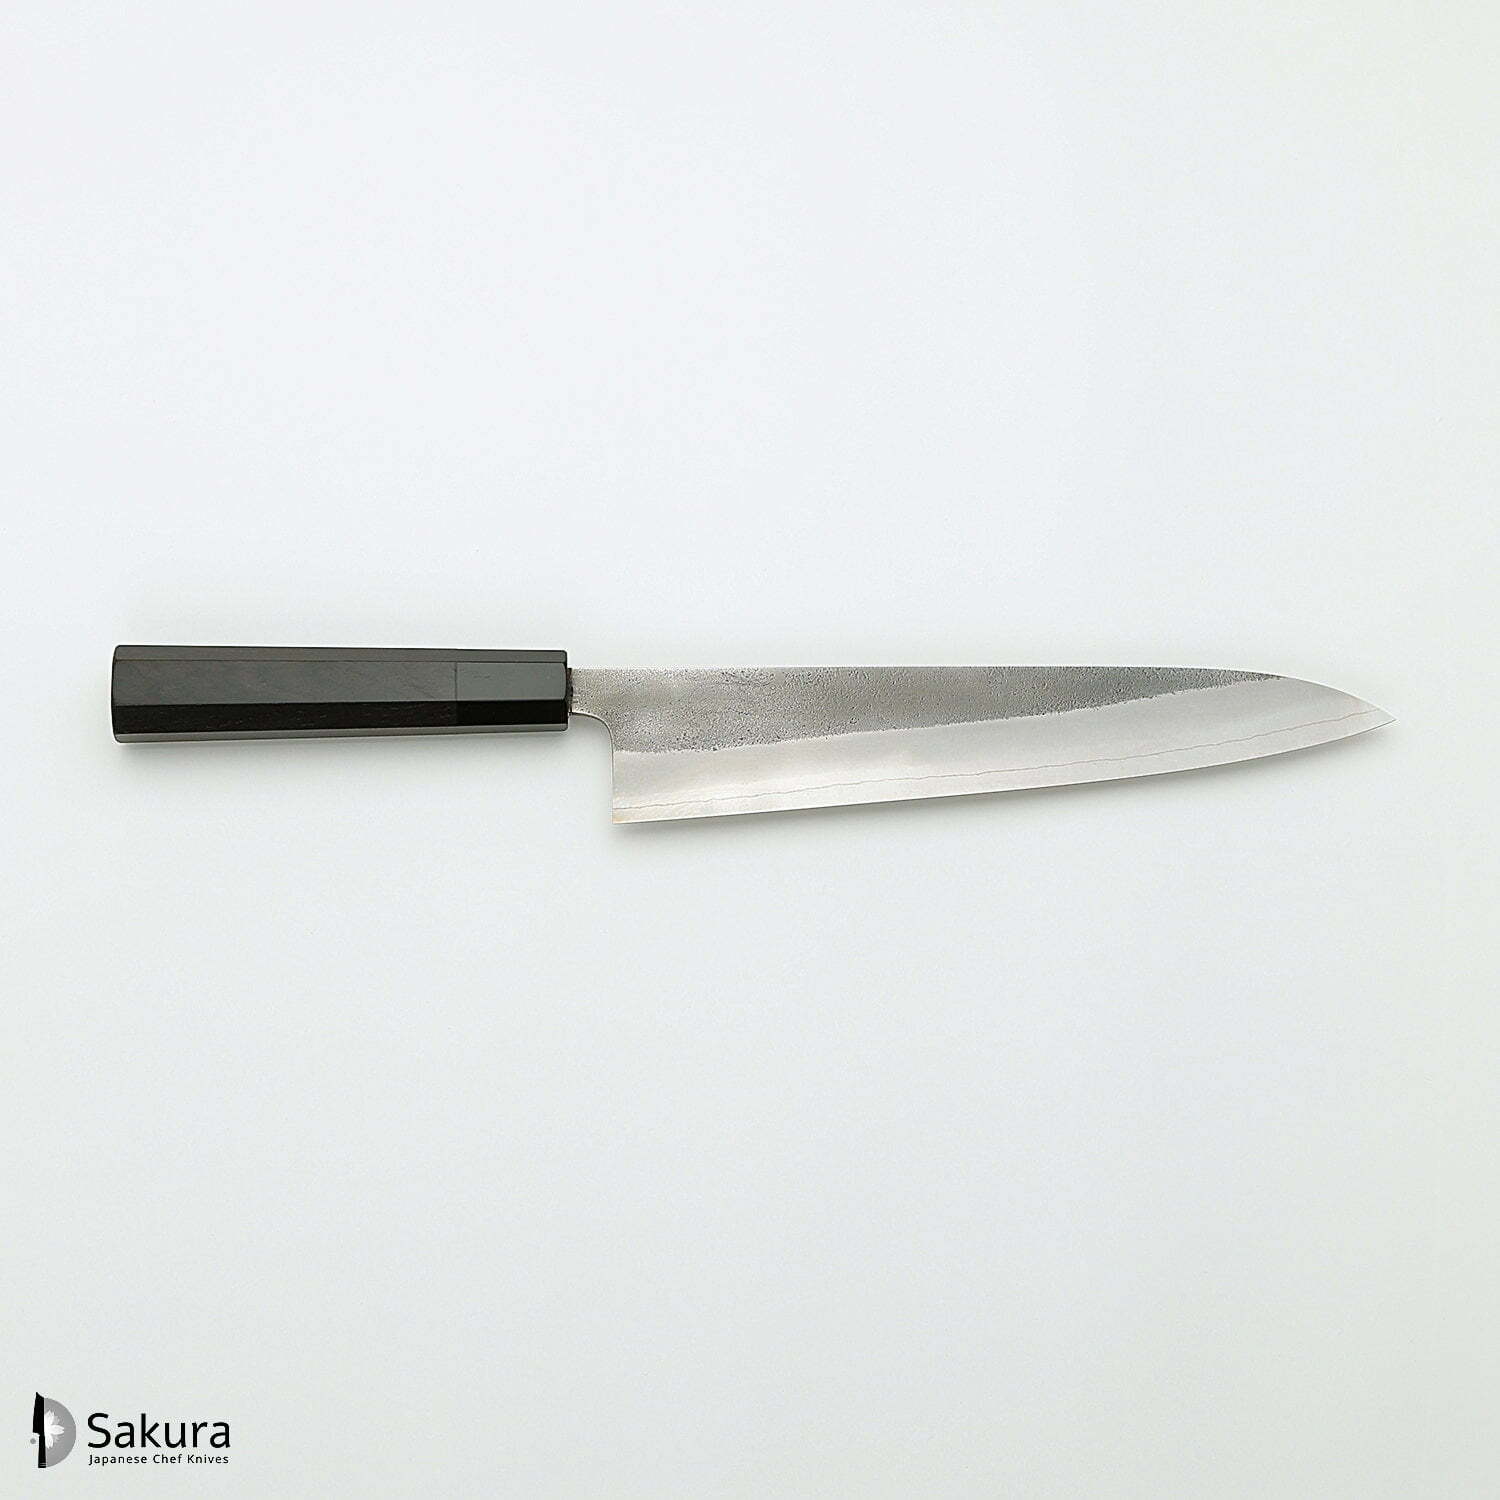 סכין שף רב-תכליתית גִּיוּטוֹ 240מ״מ מחושלת בעבודת יד 3 שכבות: פלדת פחמן יפנית מתקדמת מסוג SKD עטופה פלדת אל-חלד גימור קורורוצ׳י מט חיספוס טבעי יושיקאנה יפן